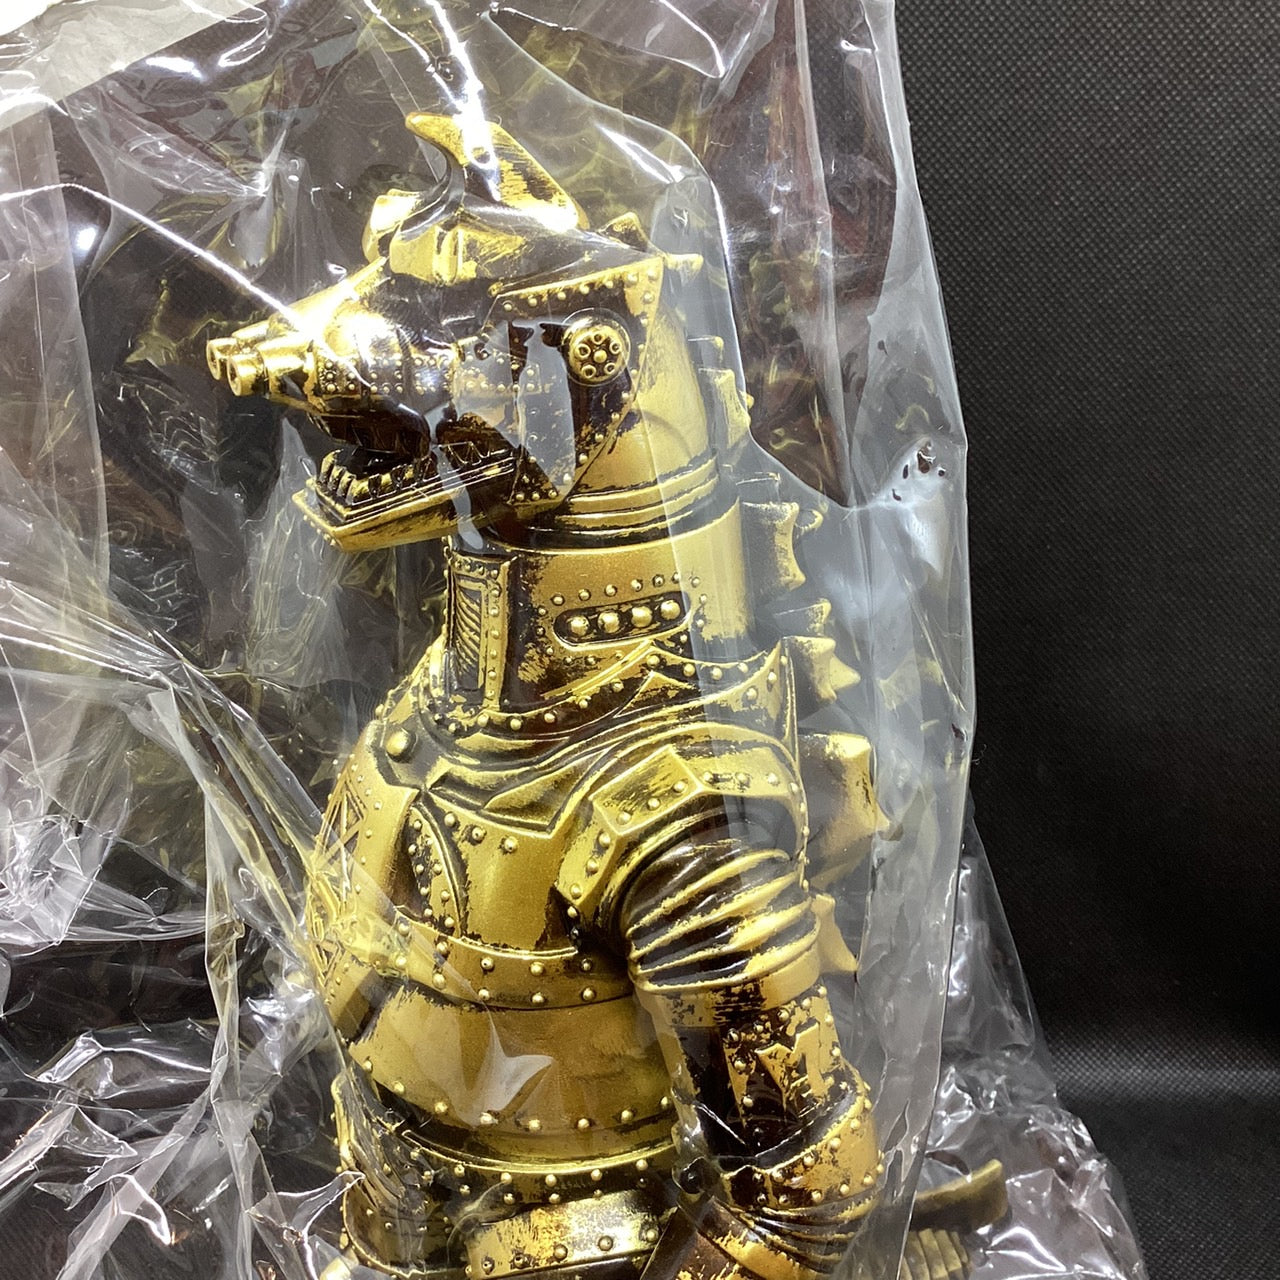 【ソフビ・委託品】MARUSAN350/2014年/世紀のロボット怪獣完成40周年記念/メカゴジラ350/黄金像/マルサン/MARUSAN